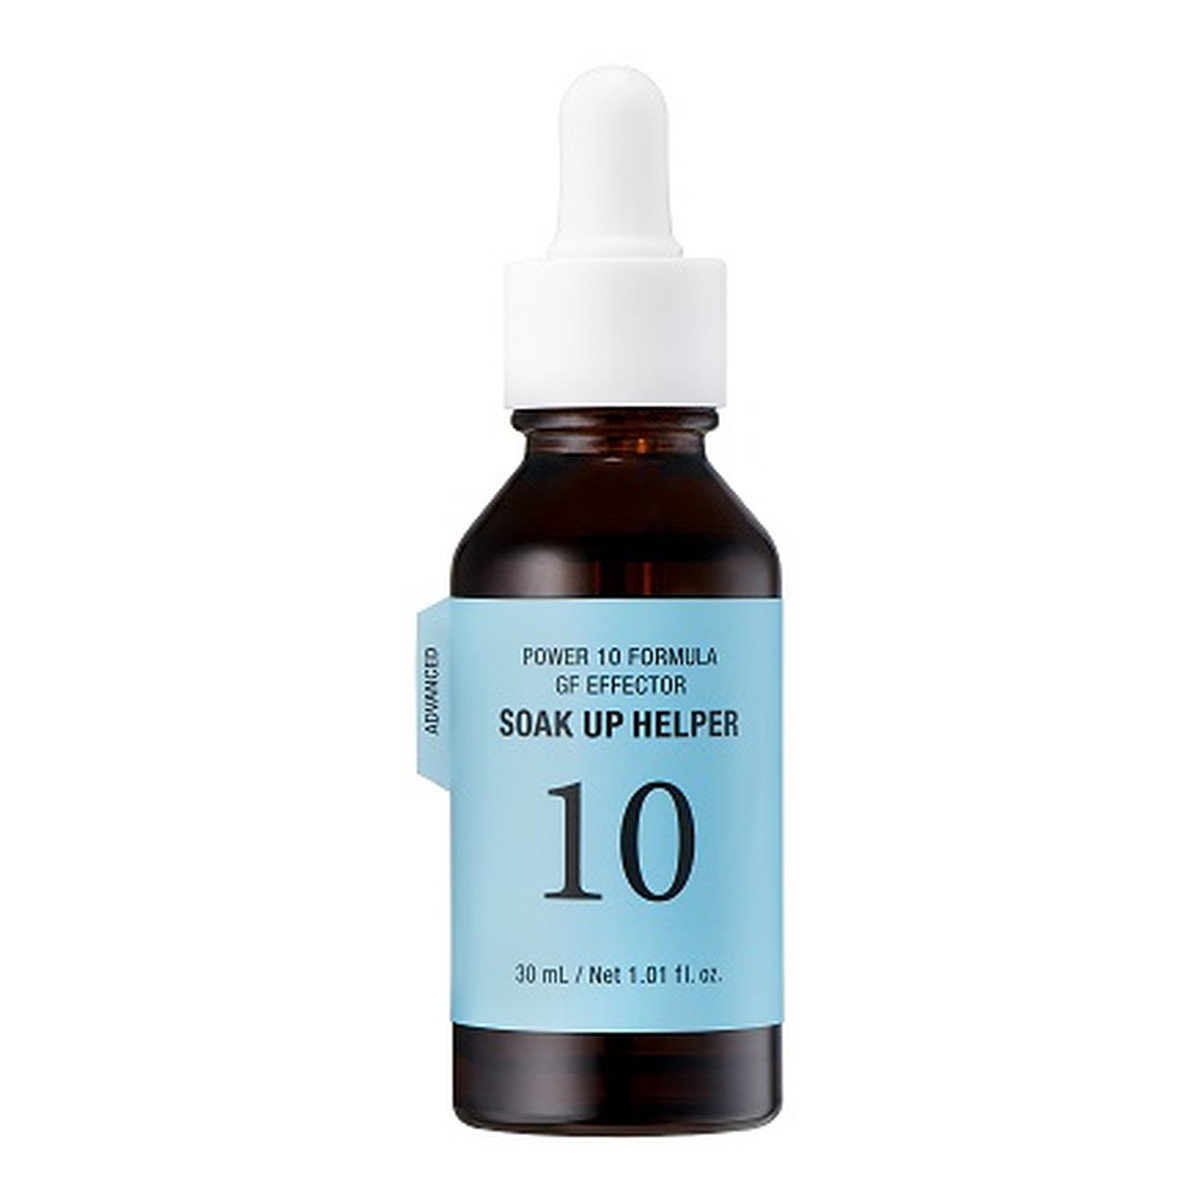 It's Skin Power 10 formula advanced gf effector soak up helper nawilżające serum przeciwutleniające do twarzy 30ml